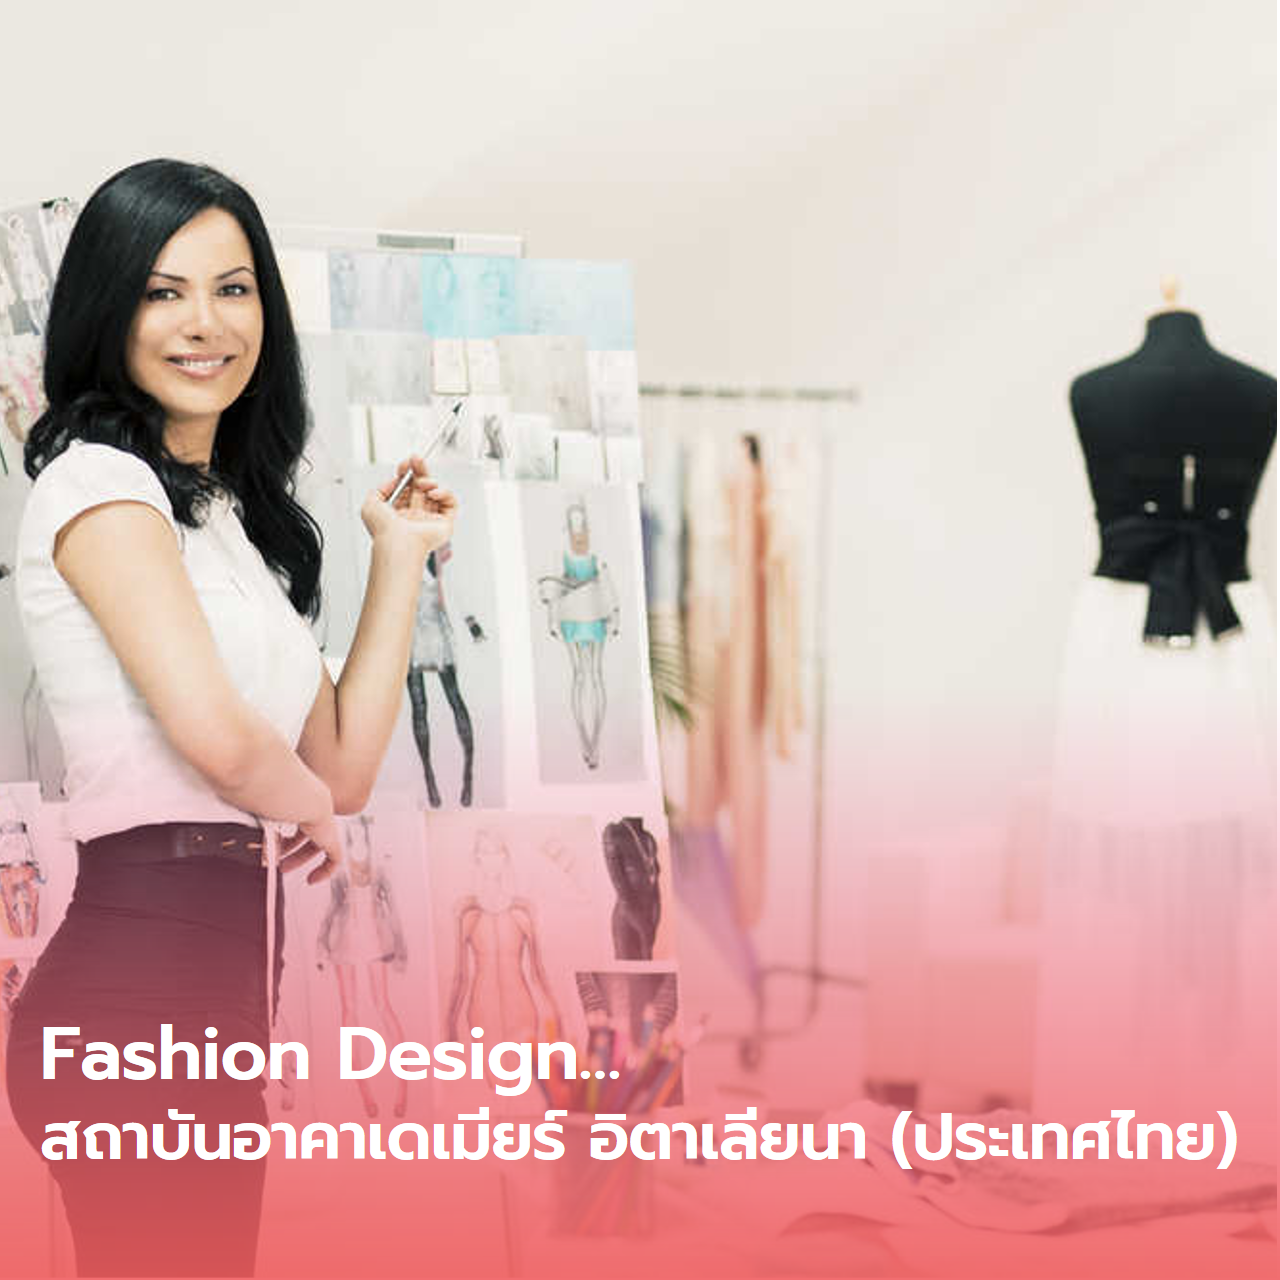  Fashion Design…สถาบันอาคาเดเมียร์ อิตาเลียนา (ประเทศไทย)